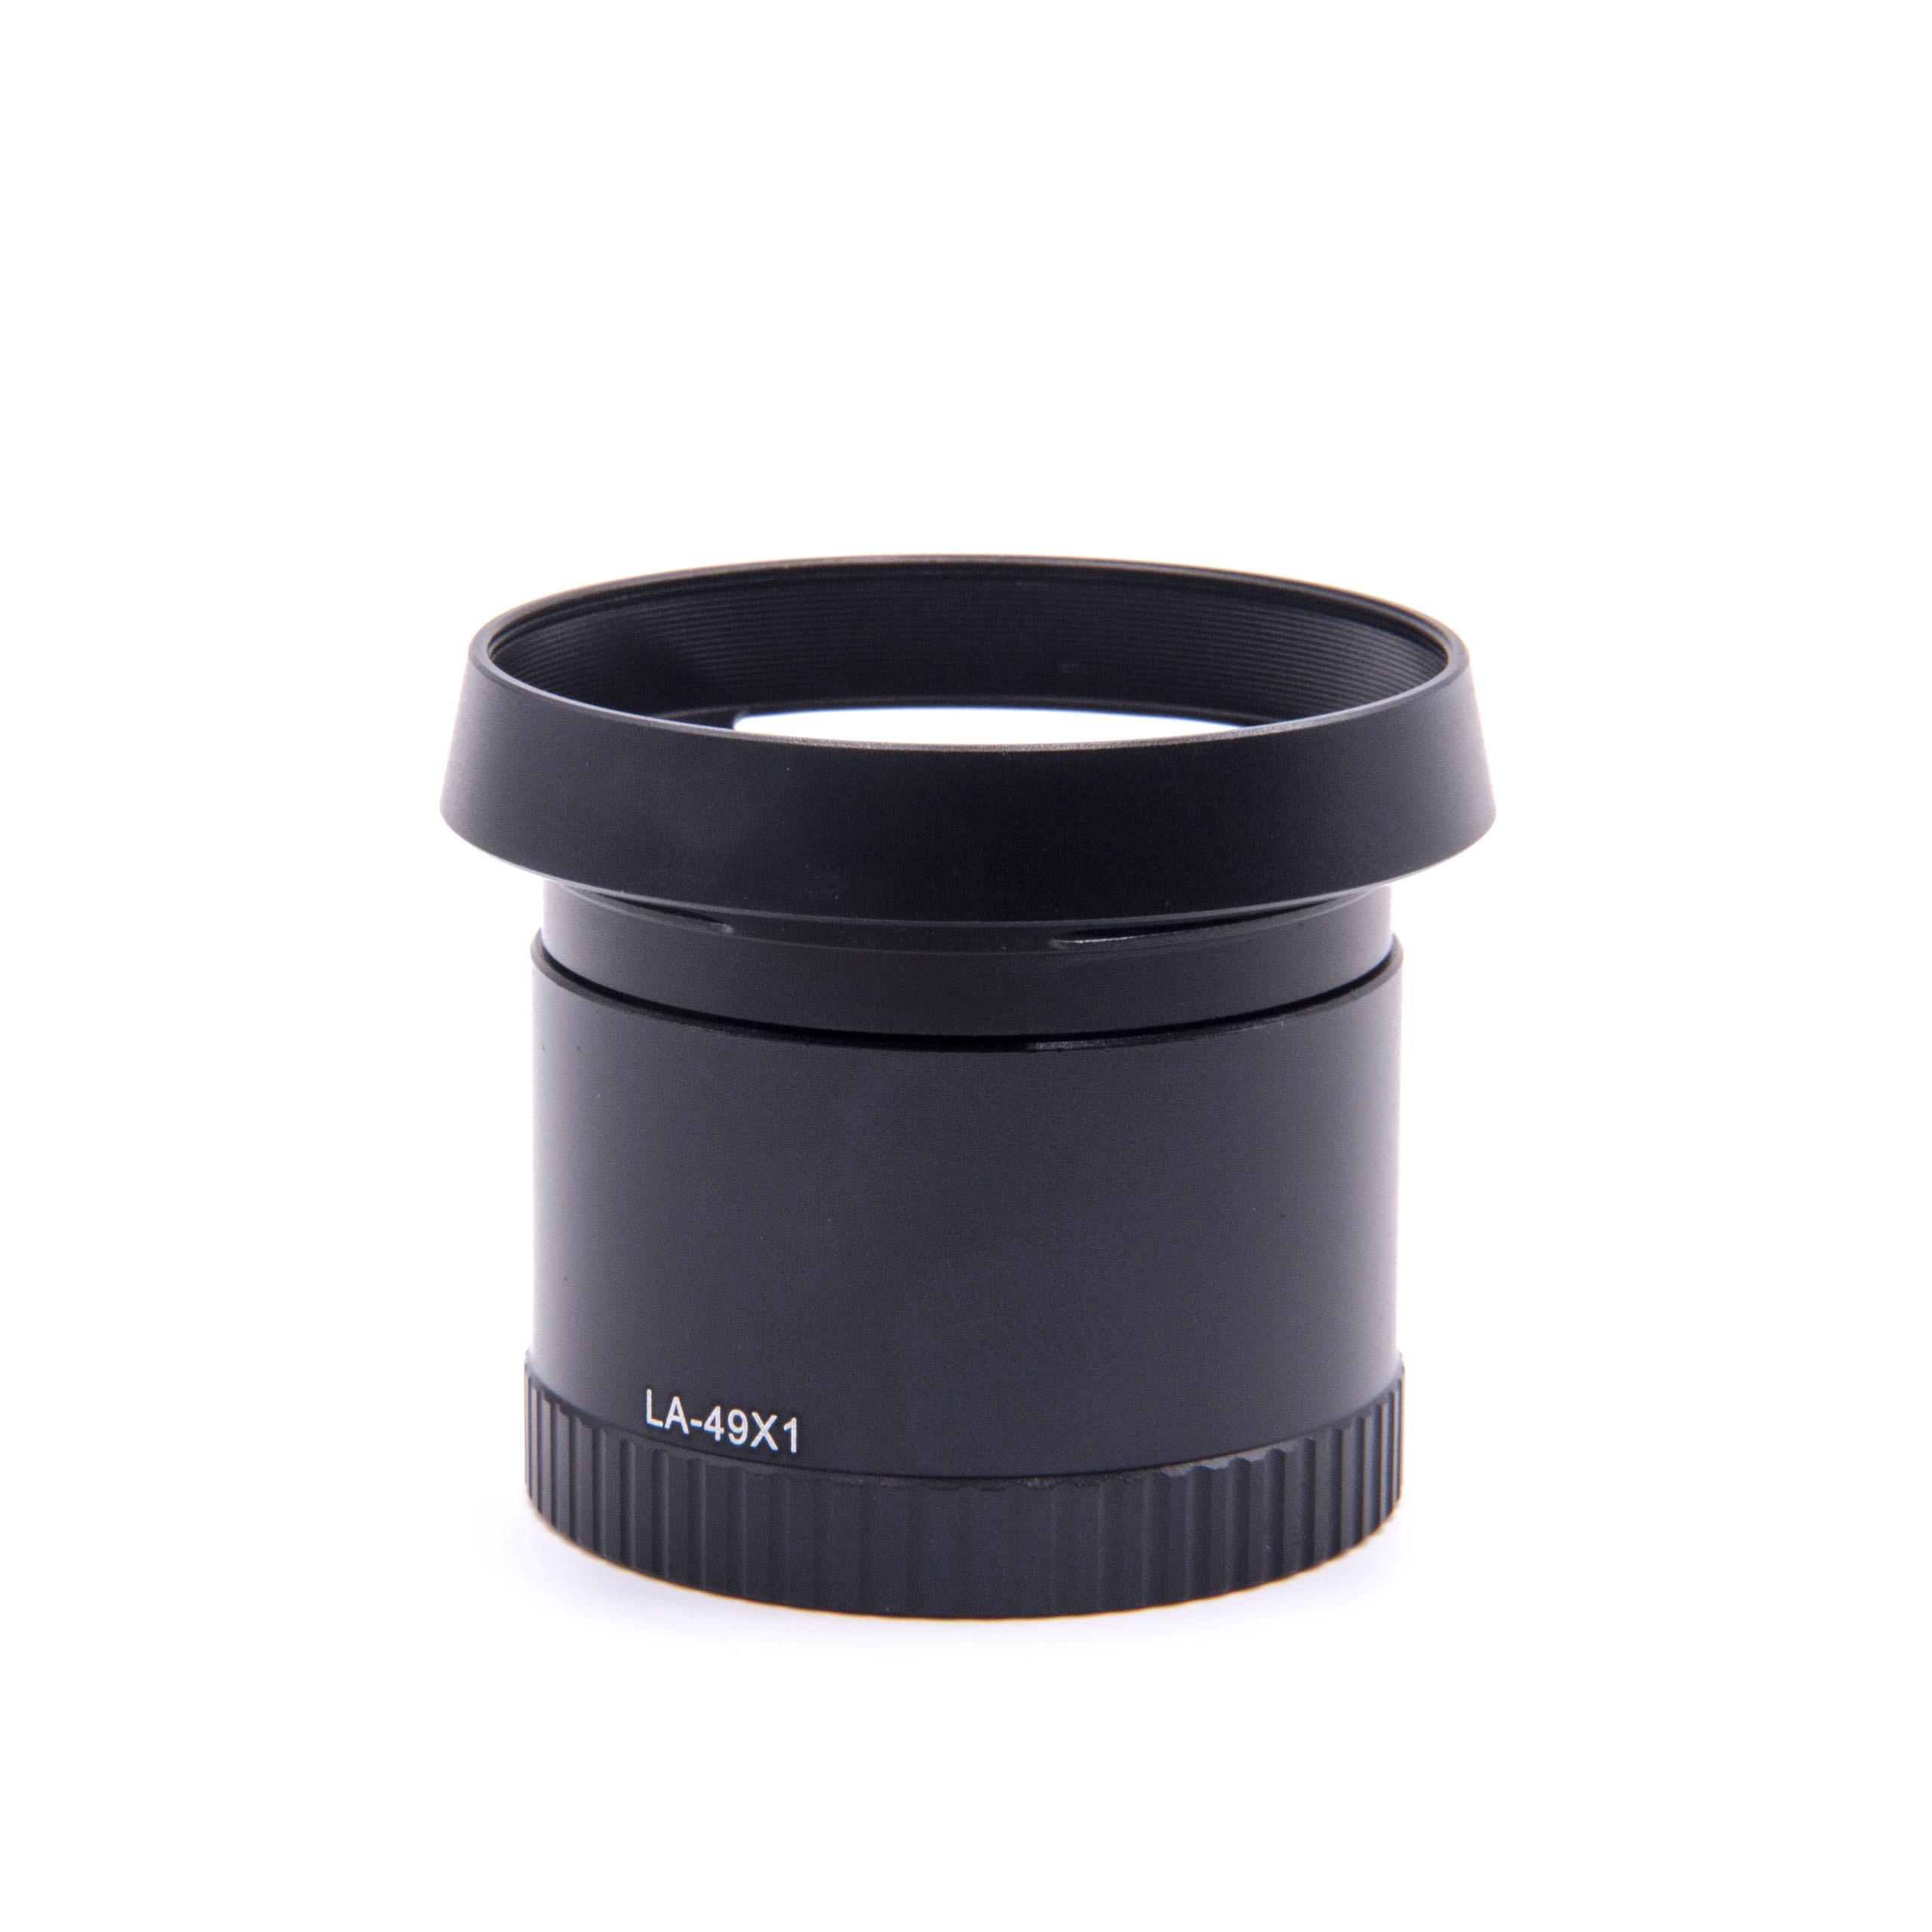 Redukcja filtrowa 49 mm w formie tulei do obiektywu aparatu Leica X1, X2 